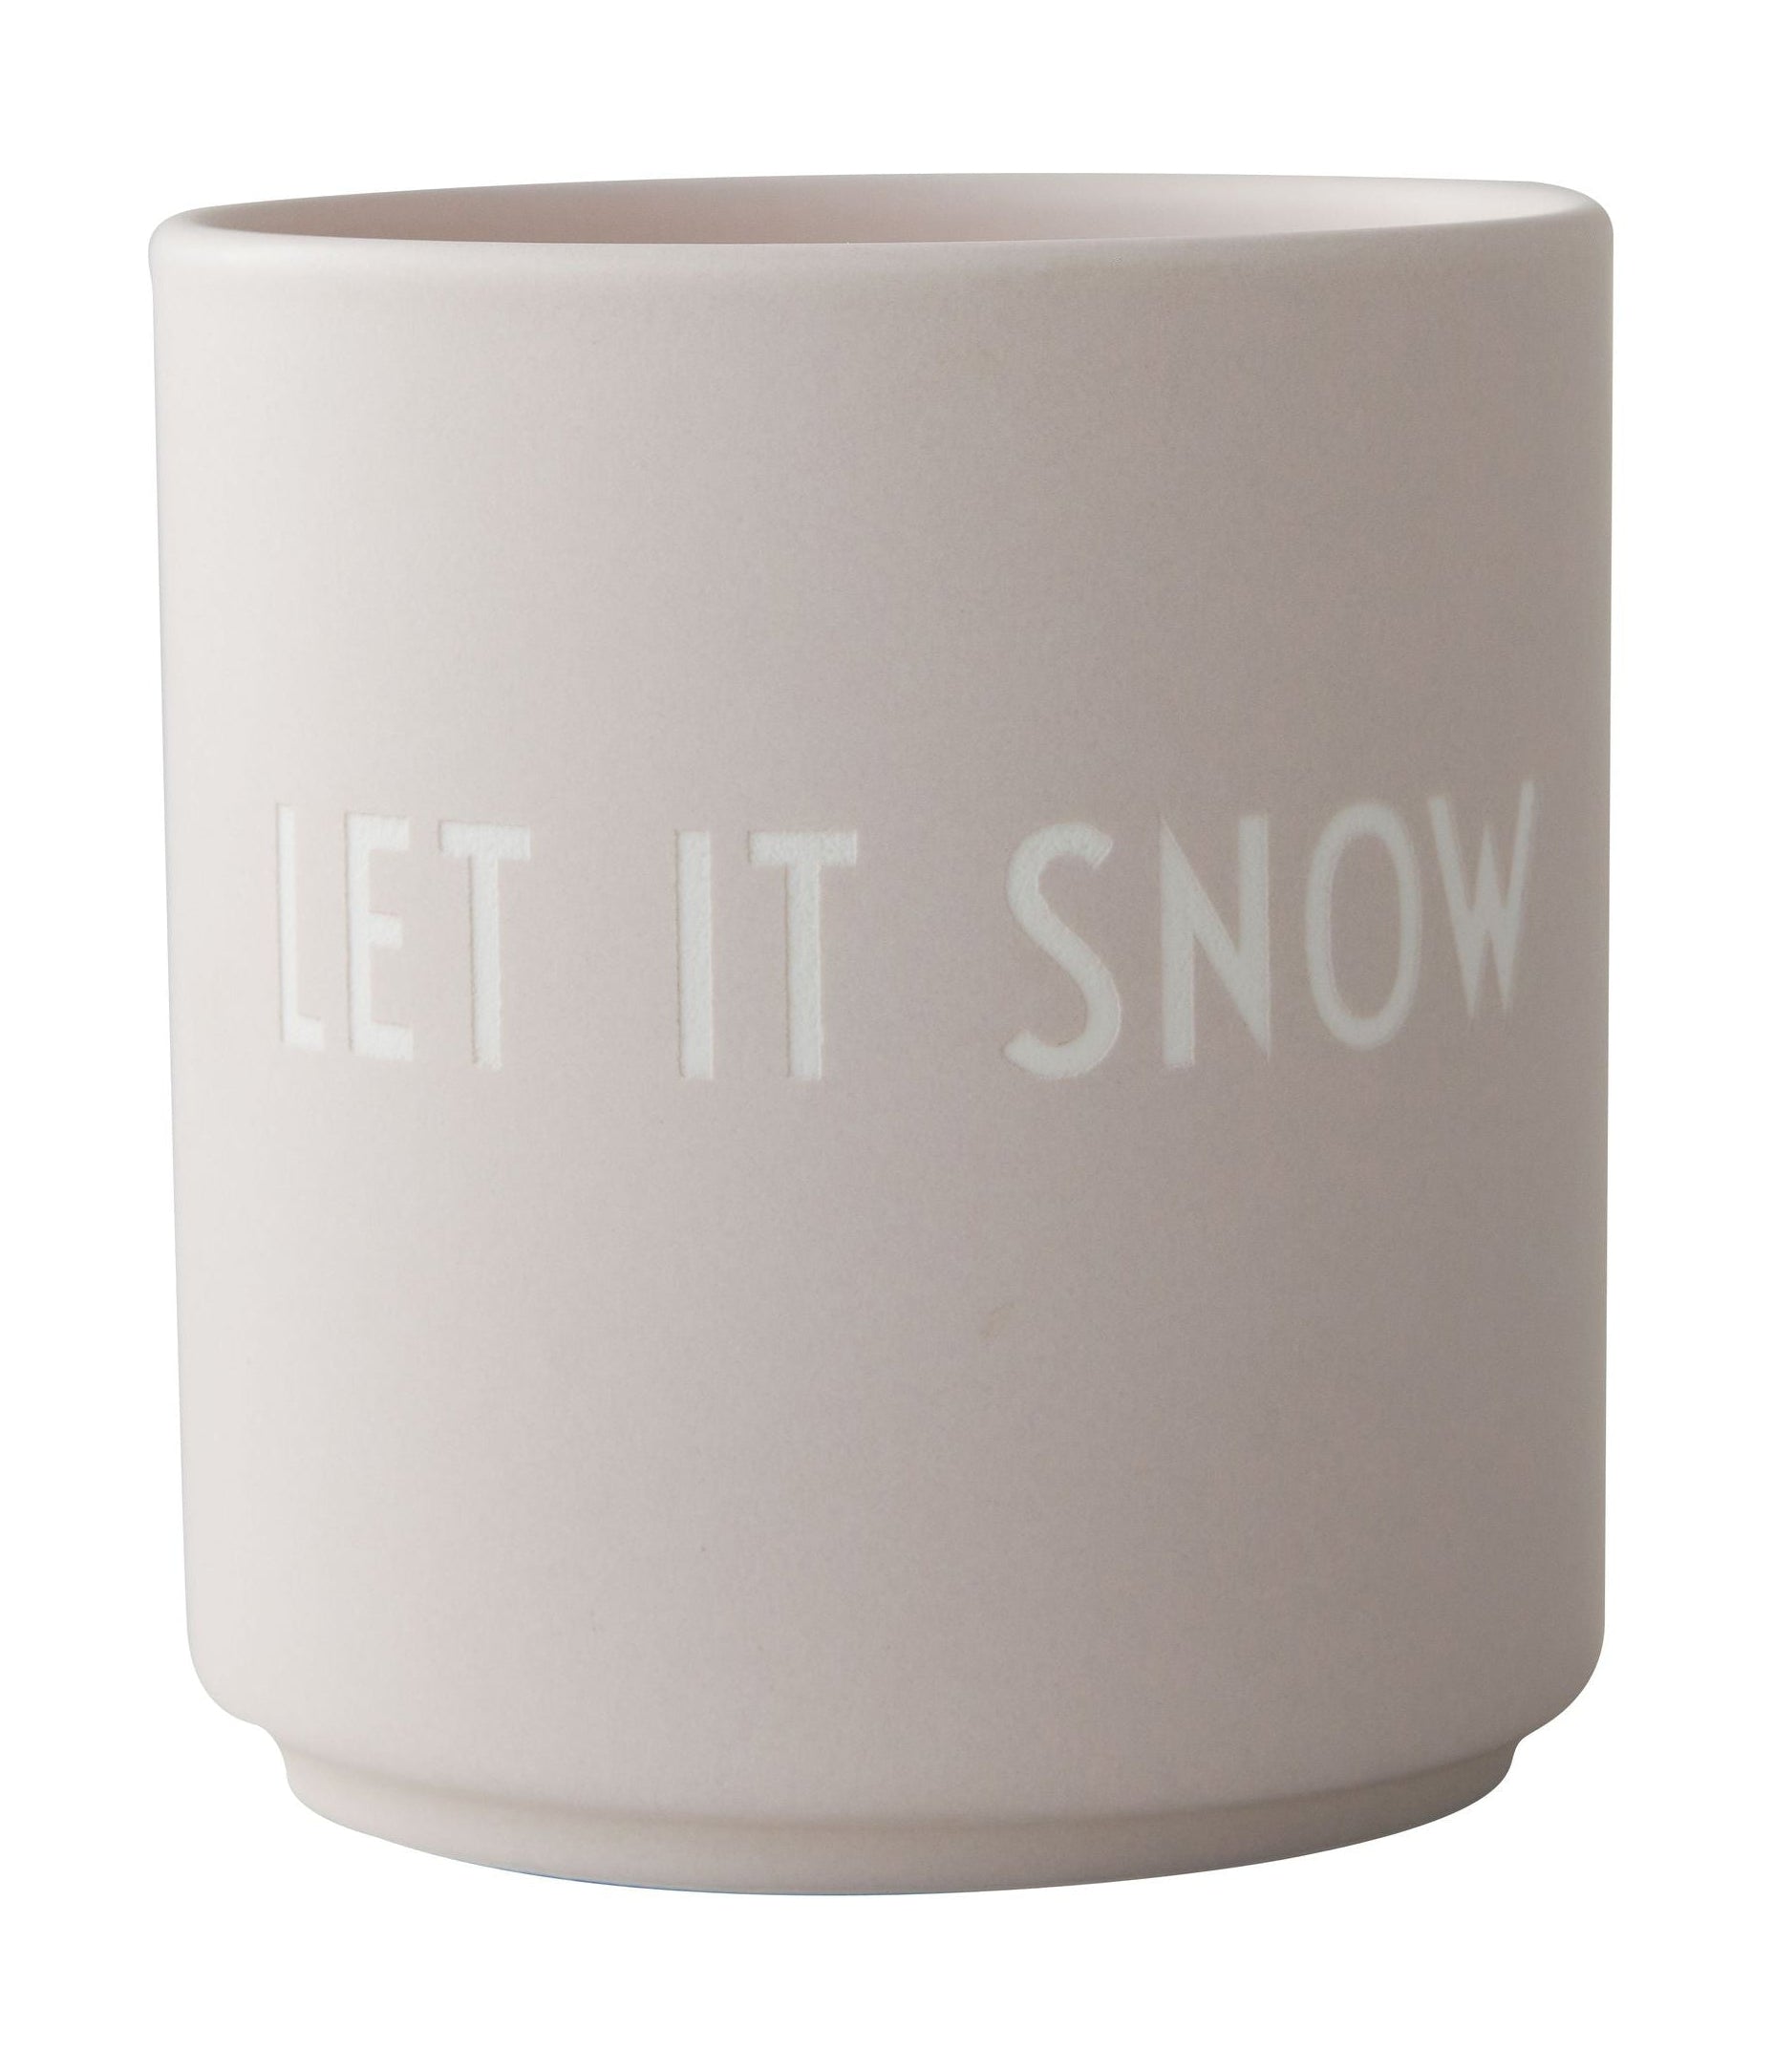 Design Letter's Favorite Mug Let It Snow, Pastel Beige